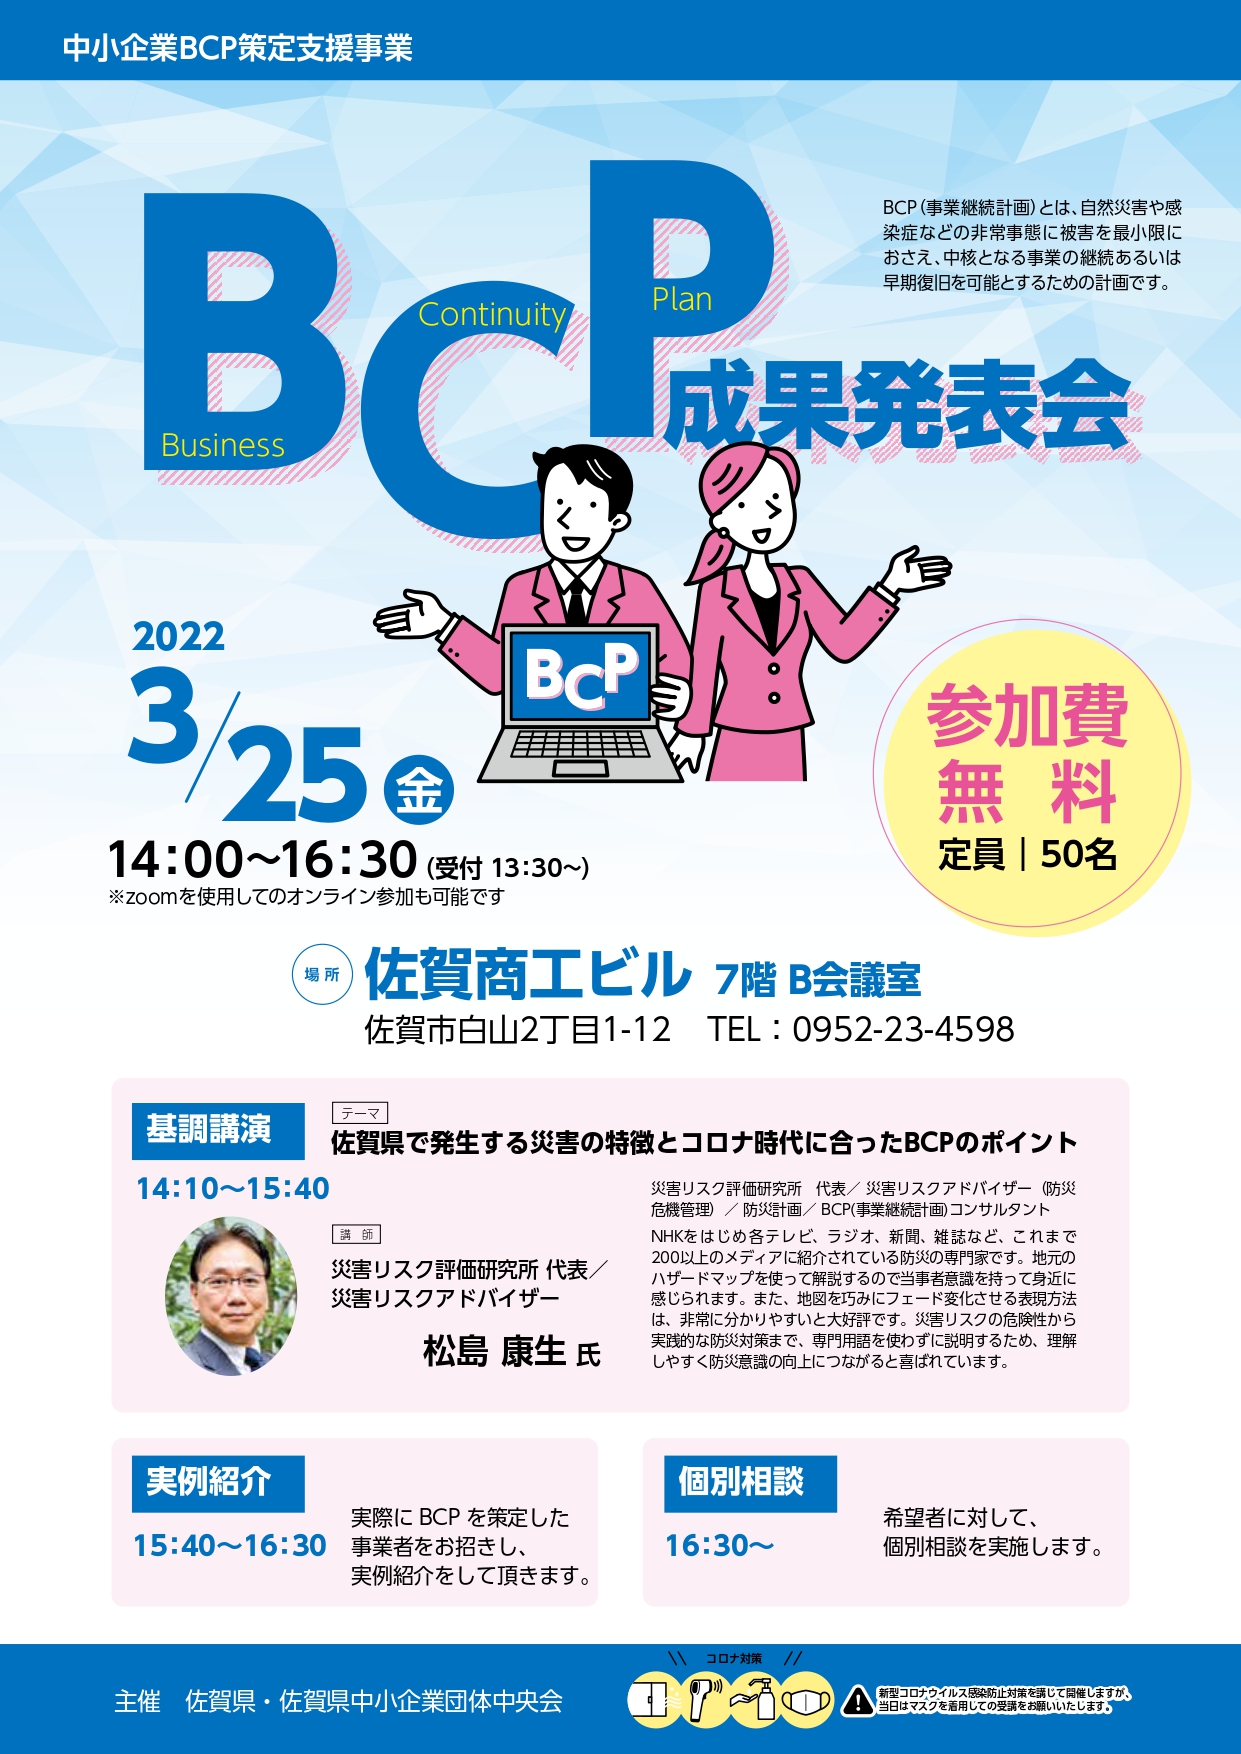 【3月25日】「中小企業BCP(事業継続計画)セミナー」の開催について